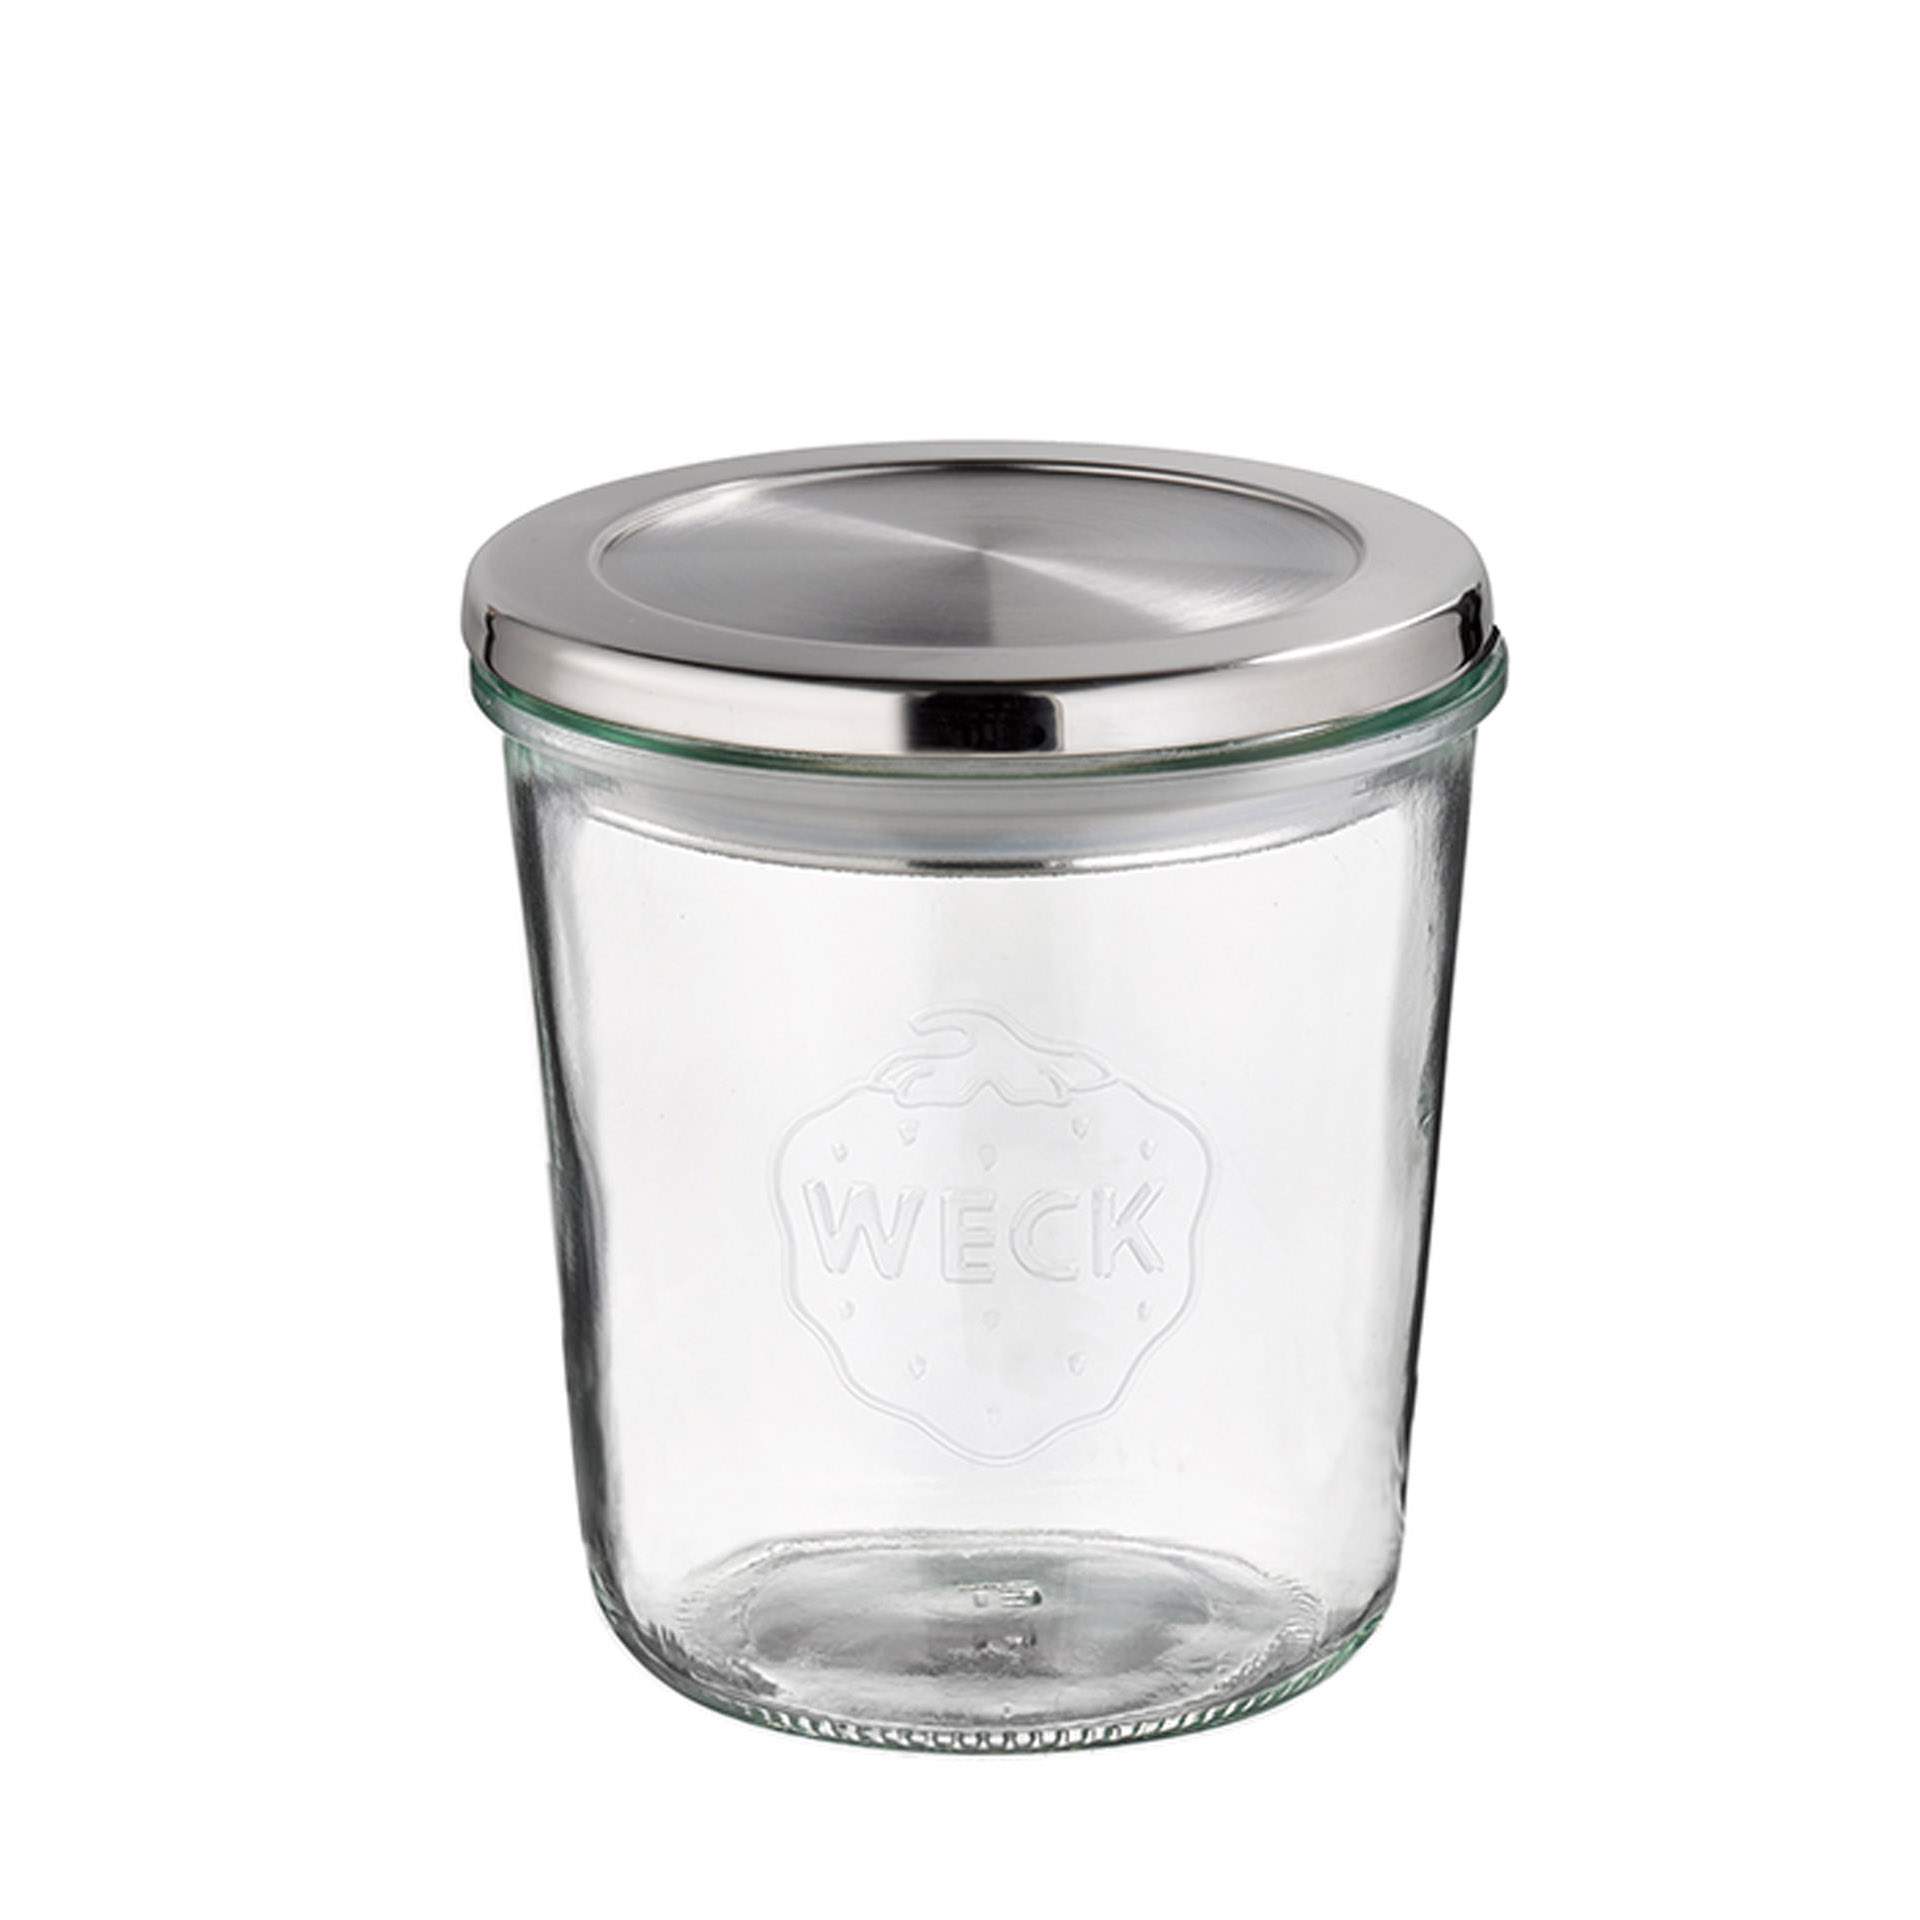 Weck-Glas - mit Deckel - Höhe 11 cm - Ø 11 cm - Inhalt 0,58 l - Glas - 82240-B